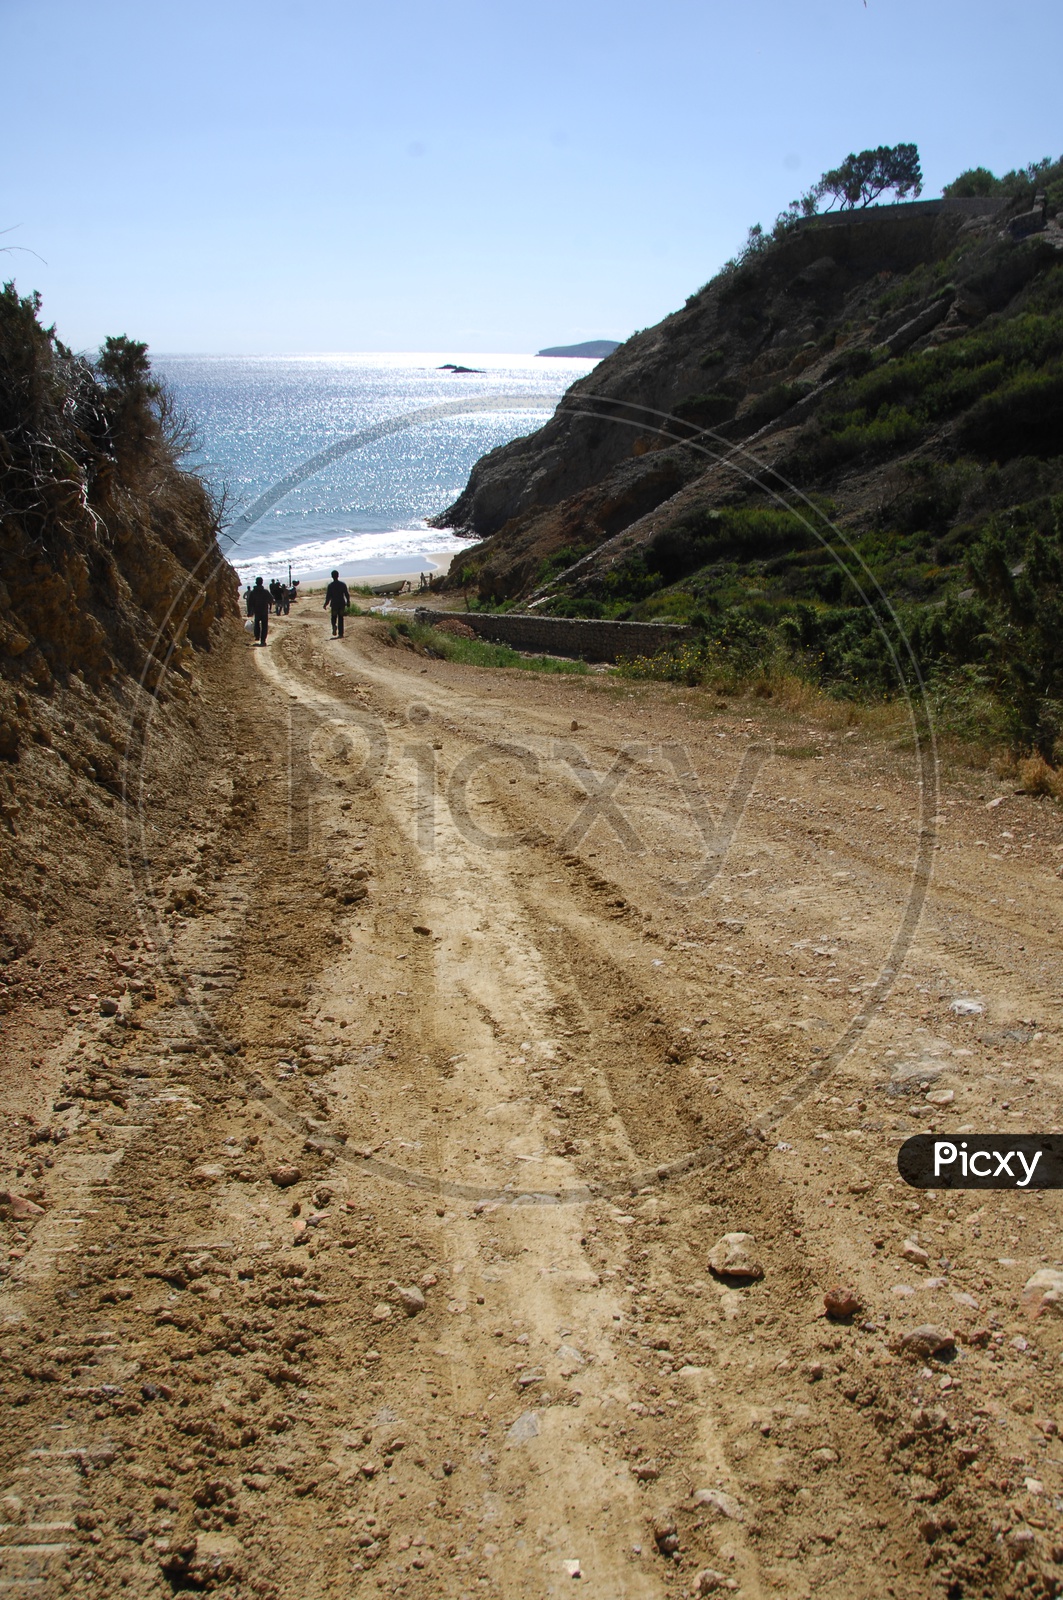 A Dirt road through the beach